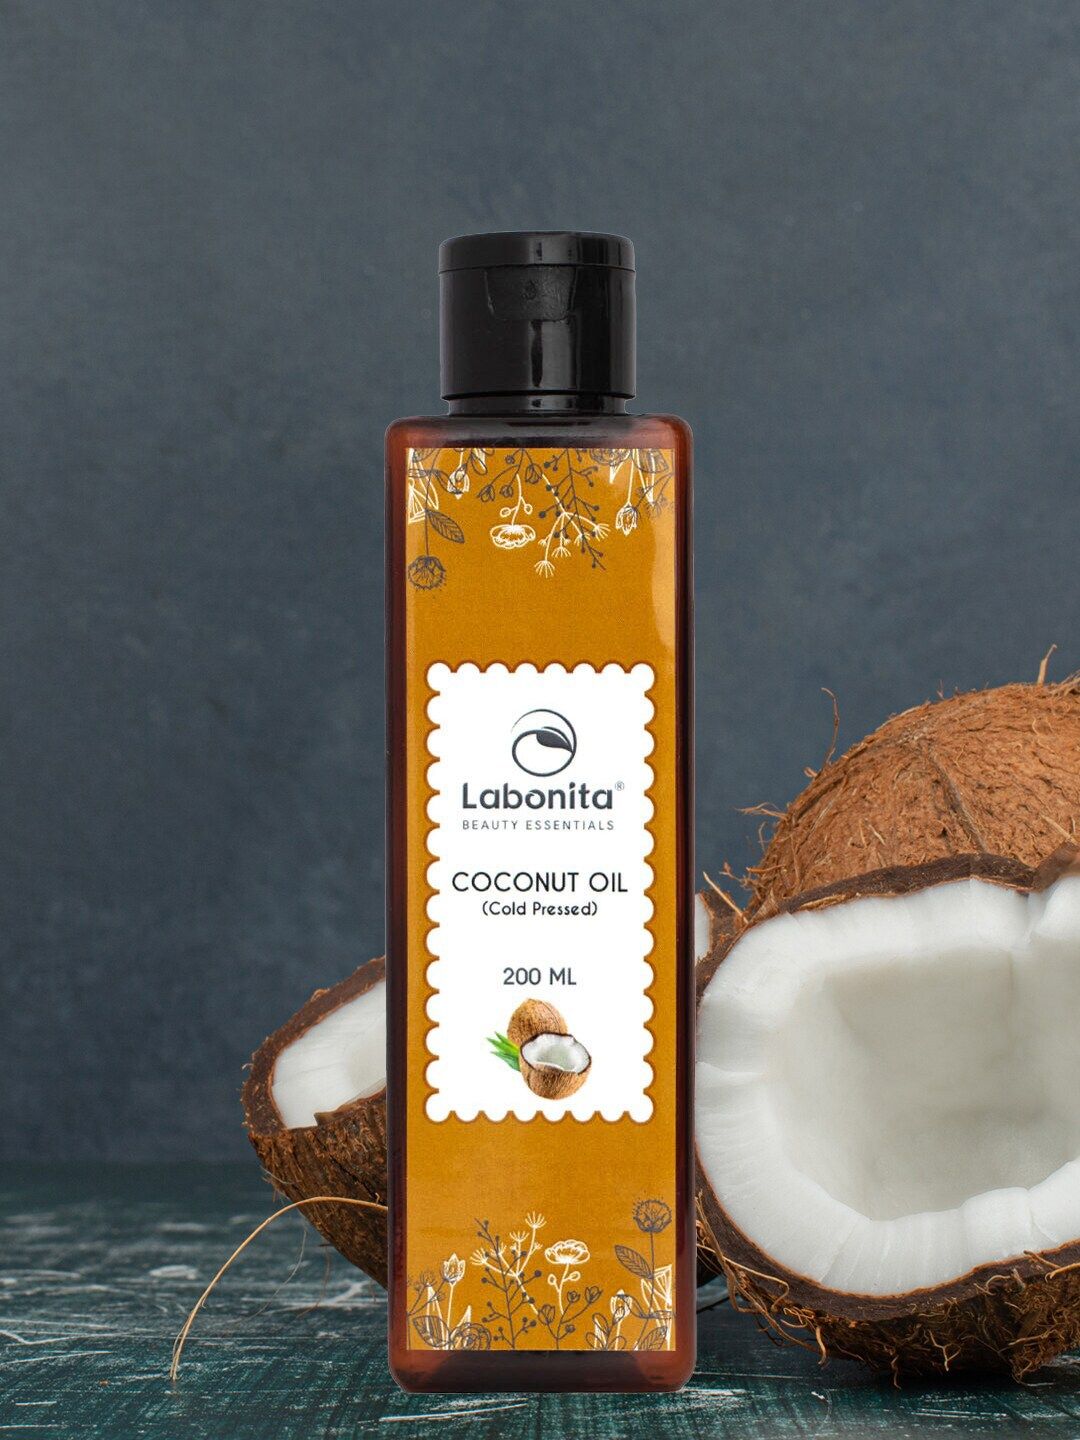 Labonita Cold Pressed Coconut Oil - 200 ml Price in India